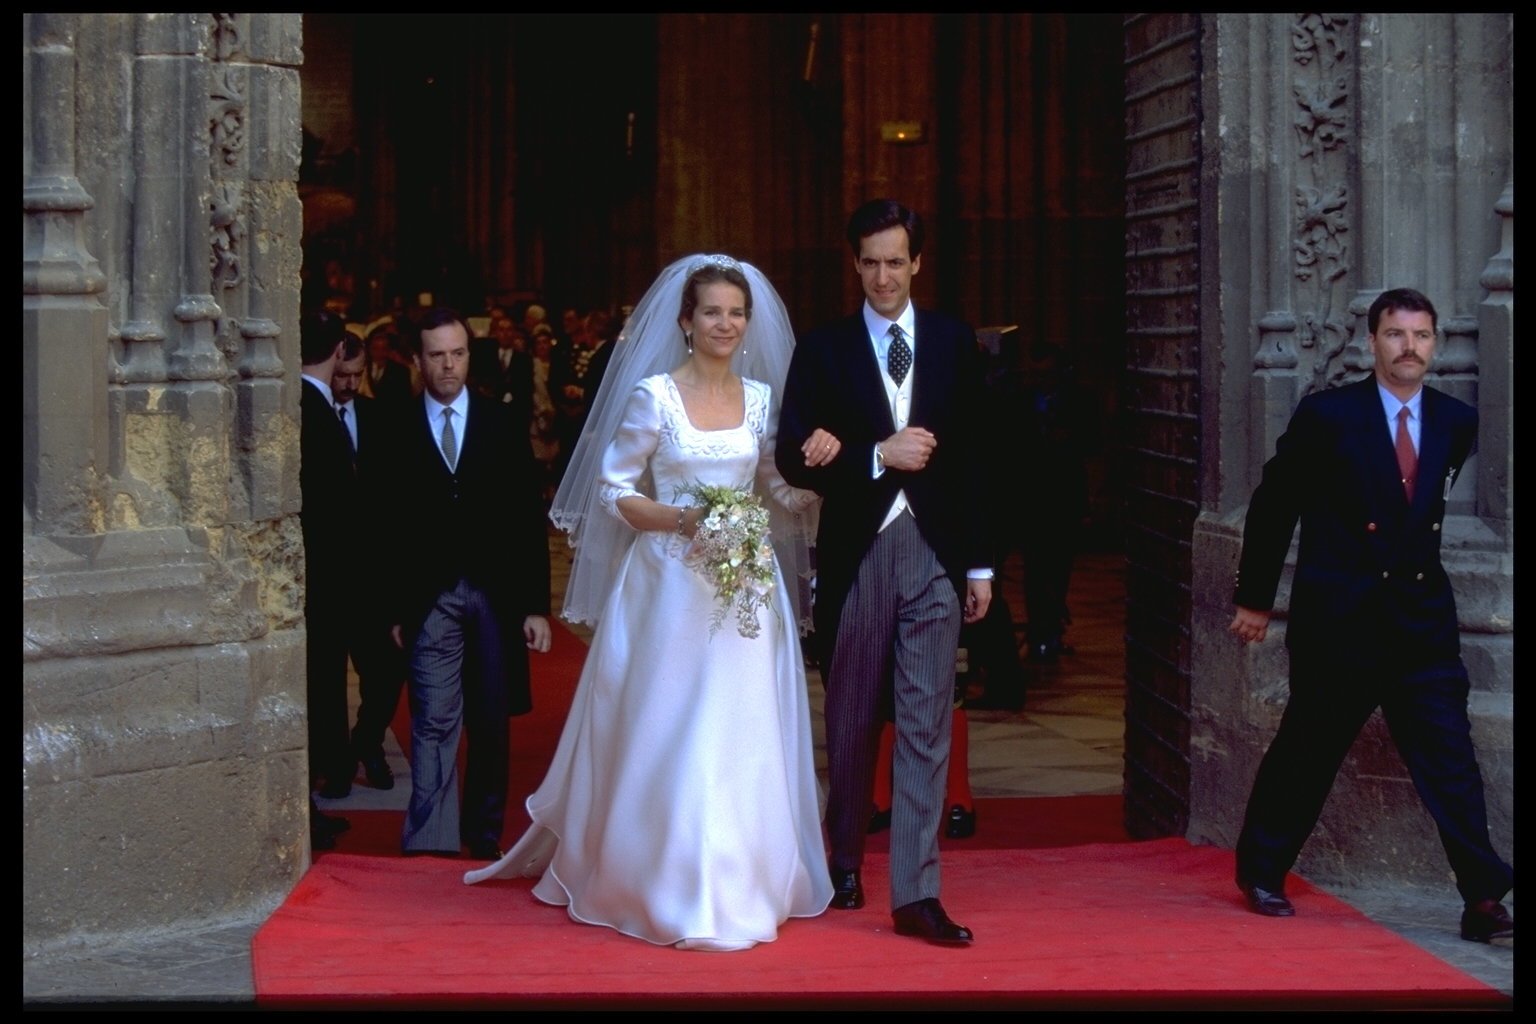 La boda de la infanta Elena y Jaime de Marichalar, en 1995. | Foto: Getty Images